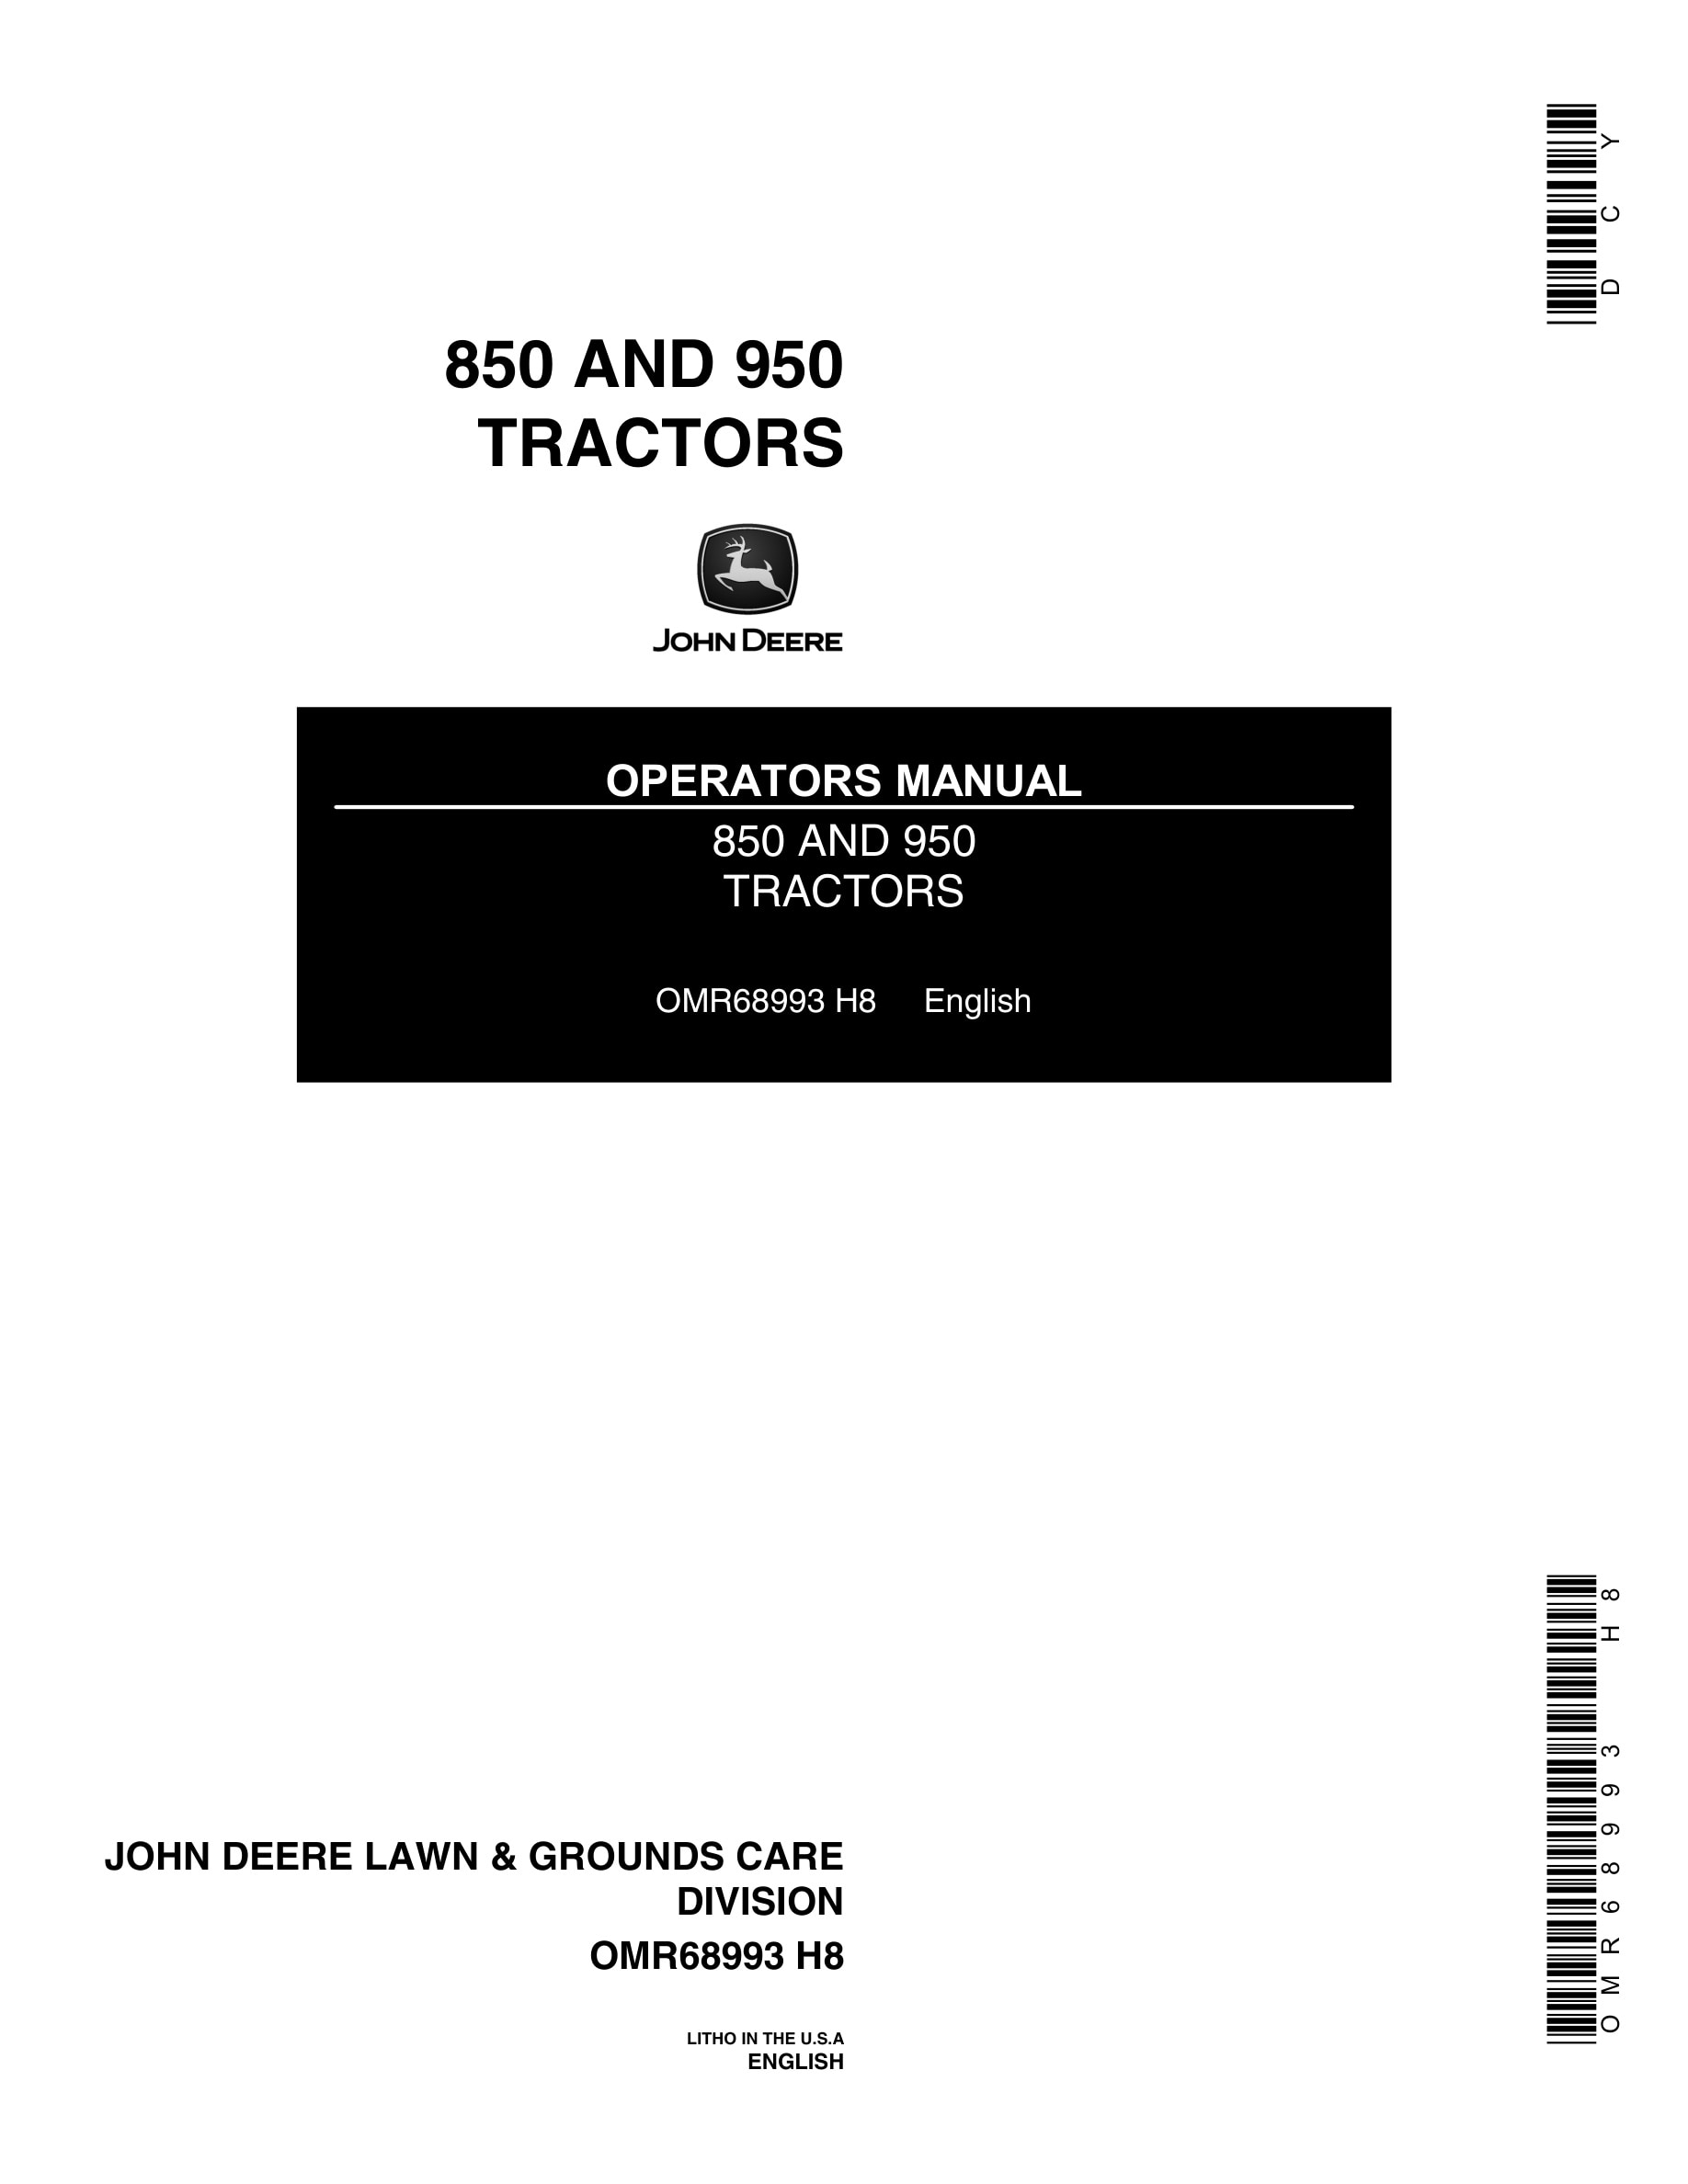 John Deere 850 AND 950 Tractor Operator Manual OMR68993-1